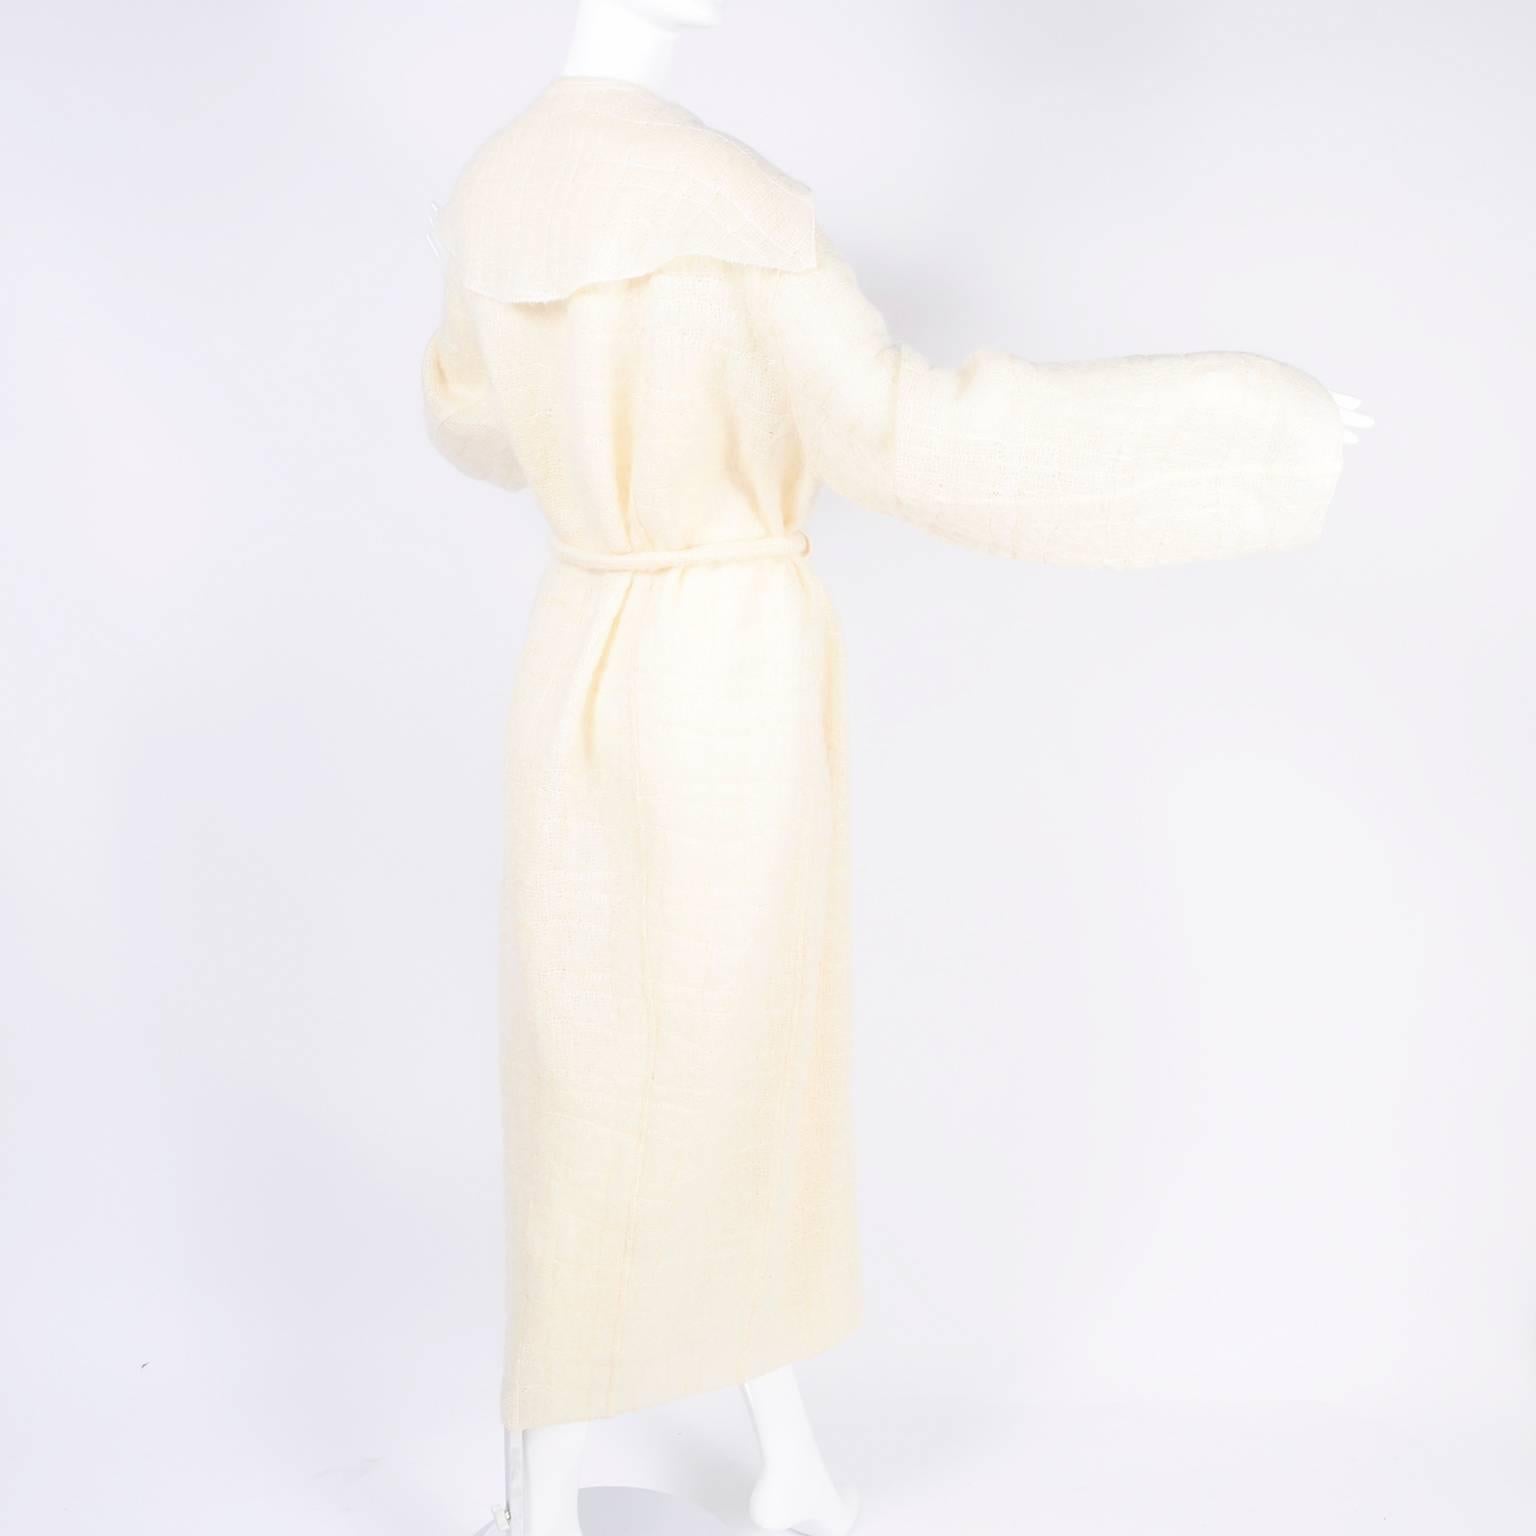 Women's Documented Runway Chanel Coat in Cream Mohair Wool, Autumn / Winter 1998